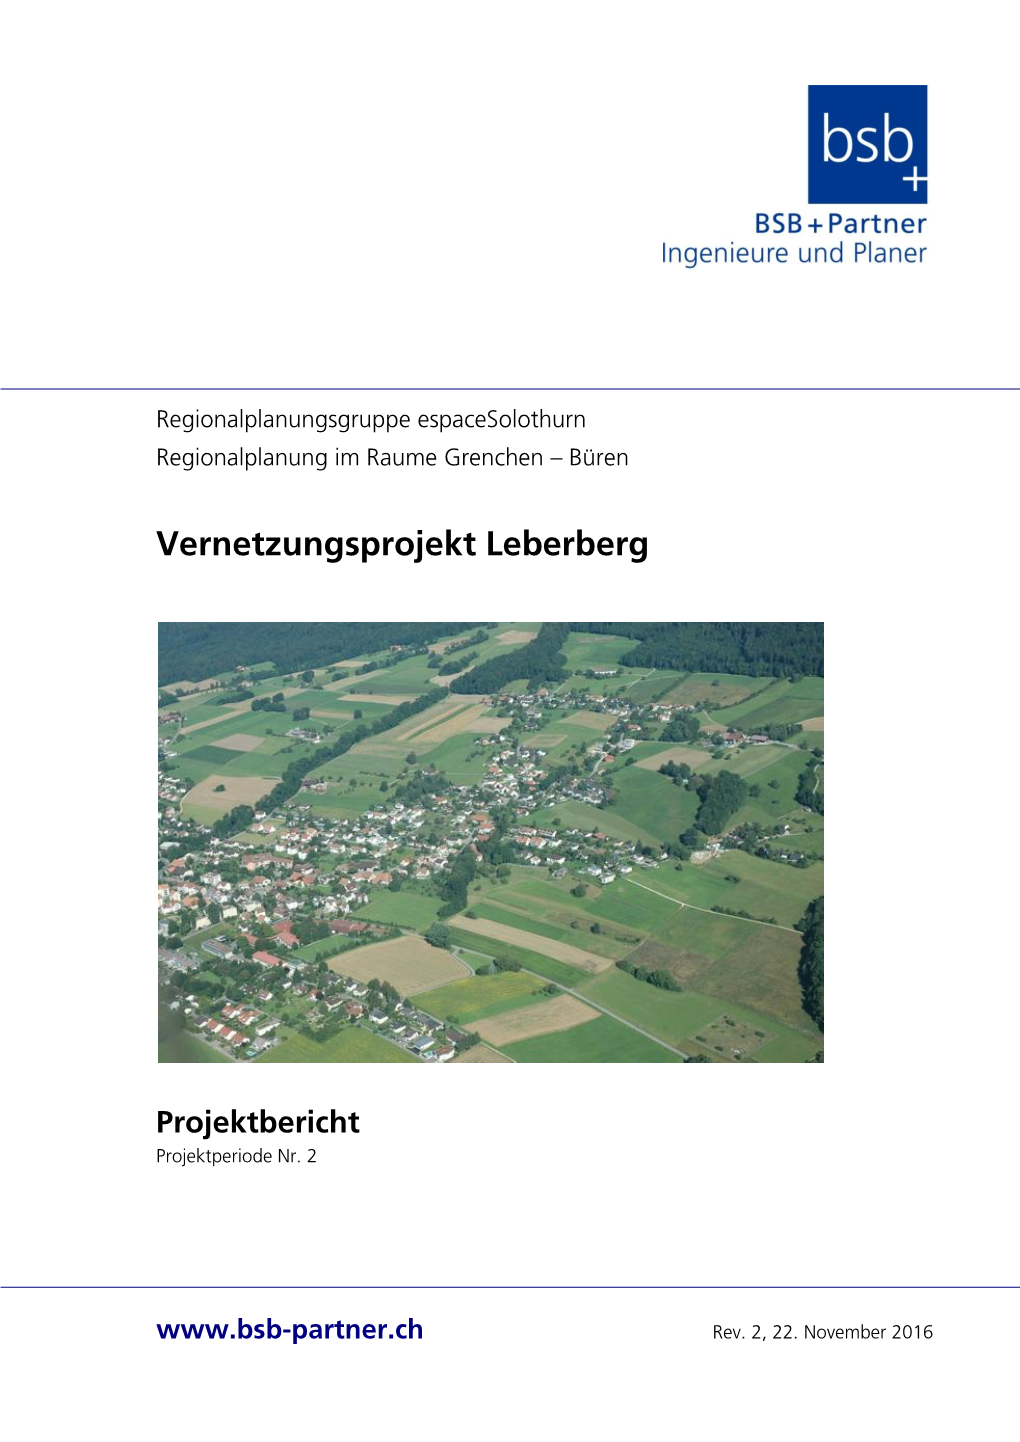 Vernetzungsprojekt Leberberg